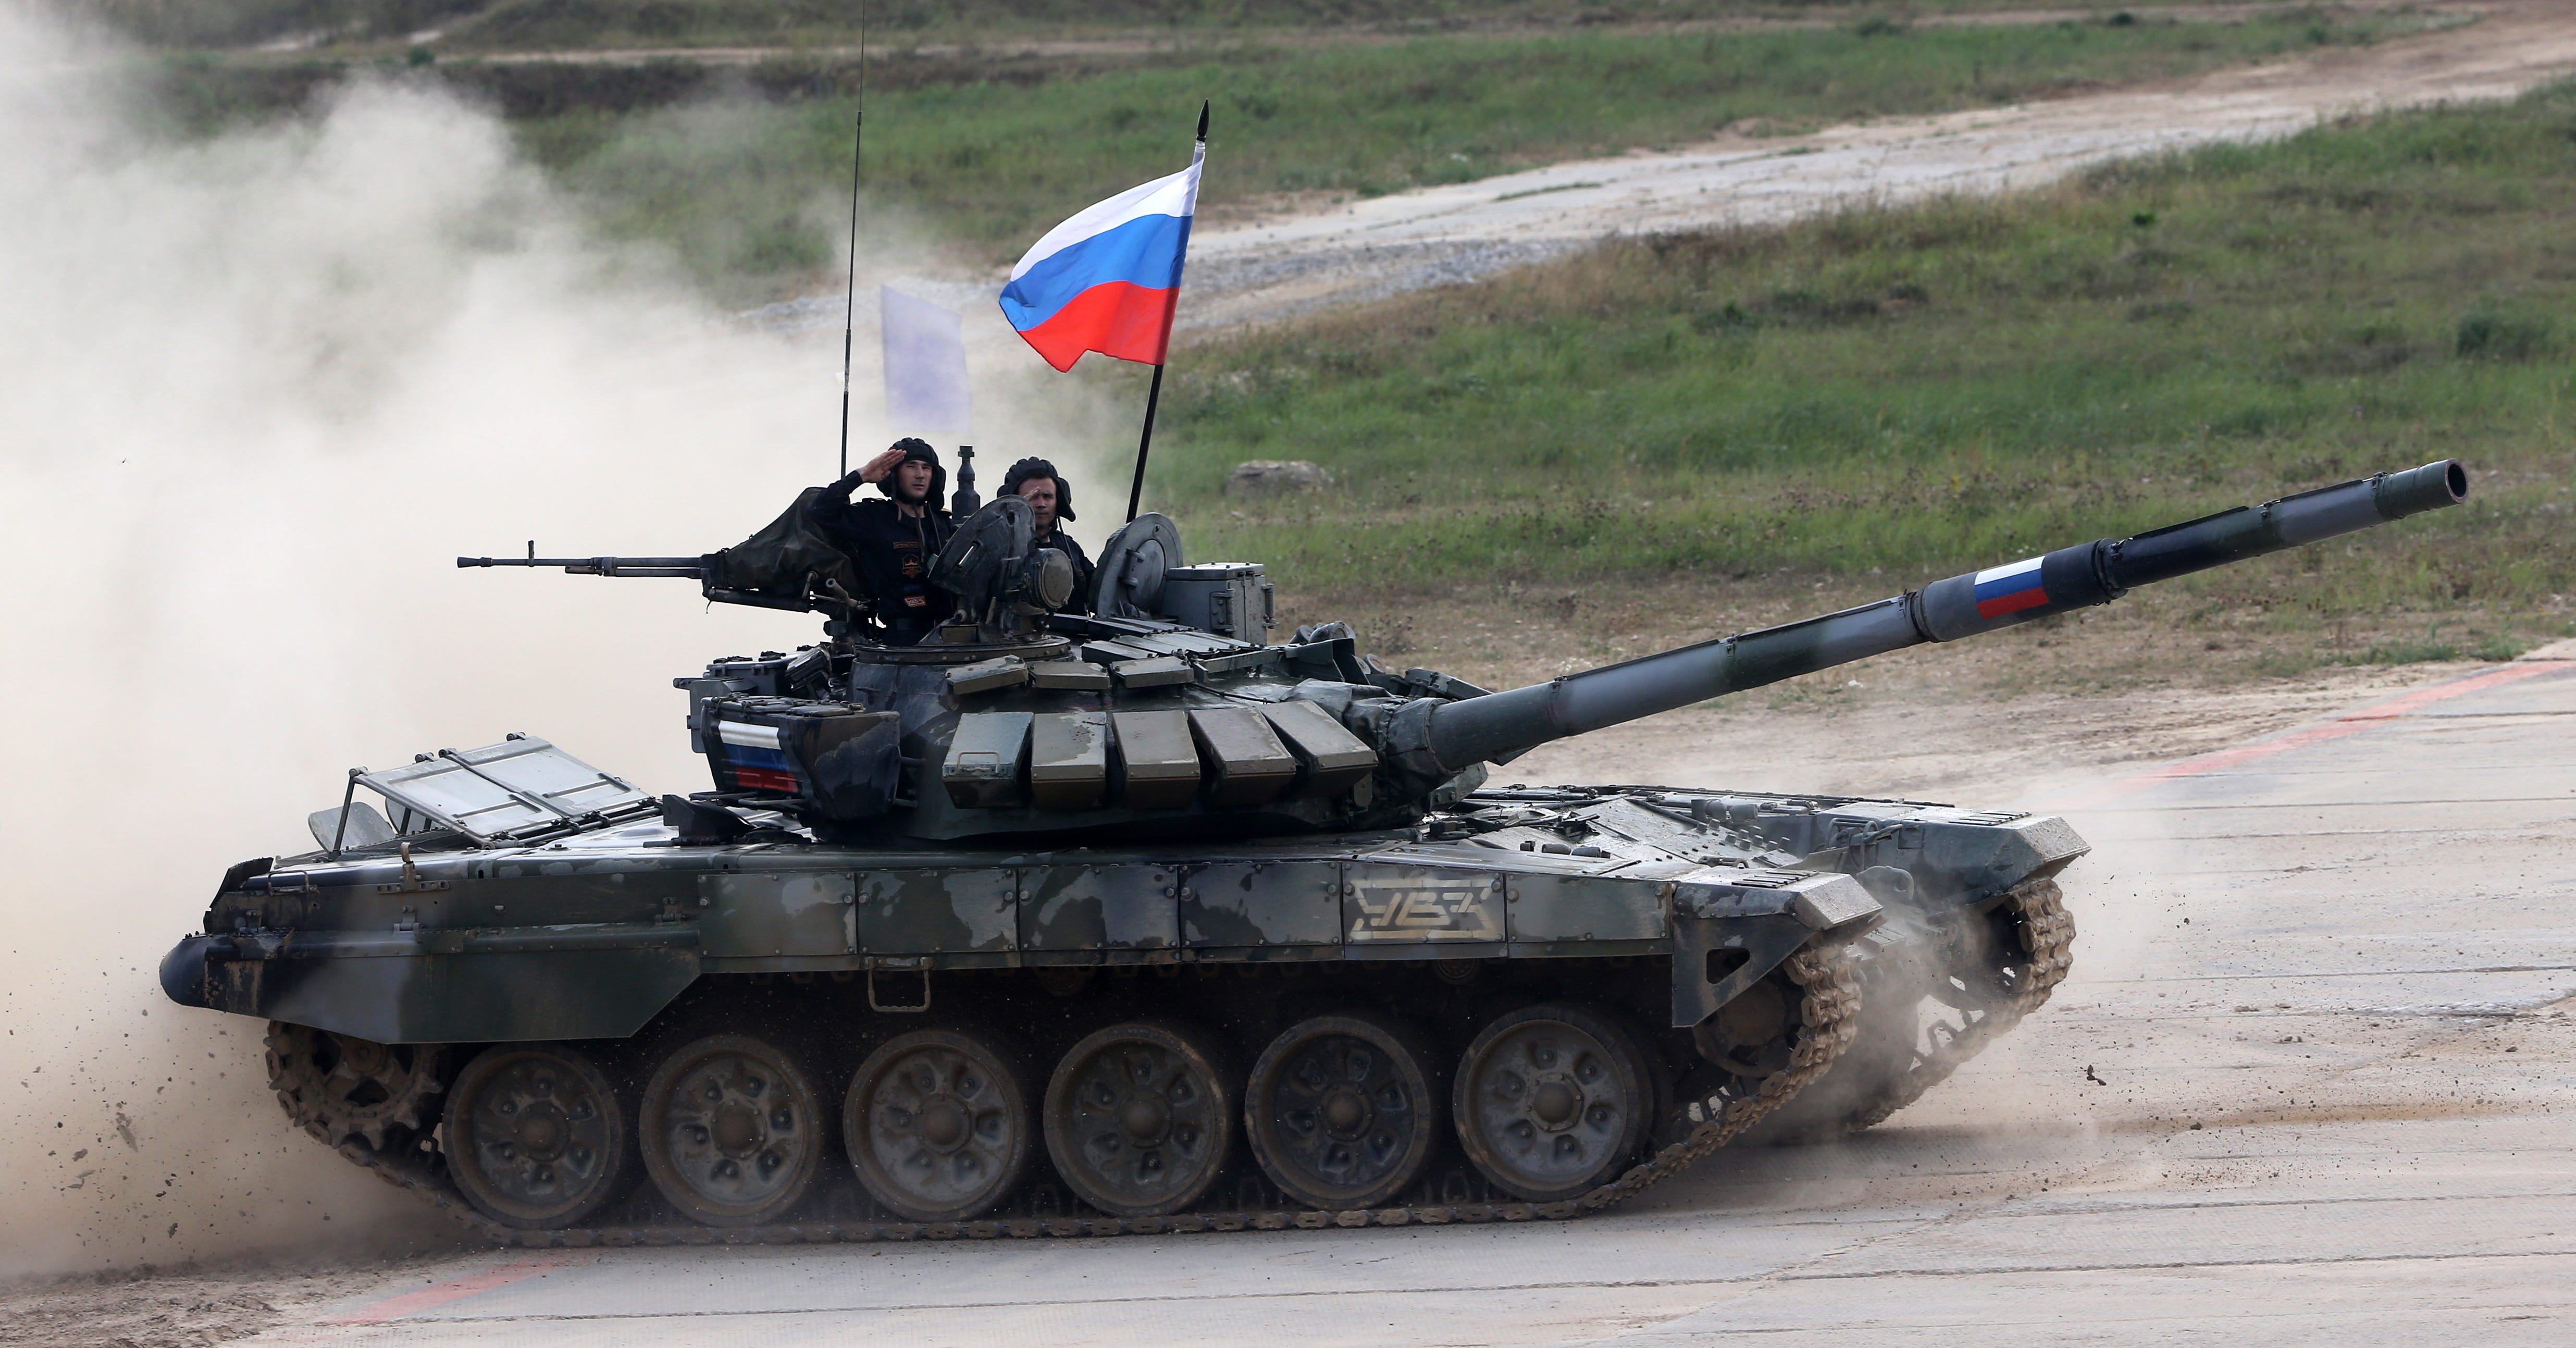 Ein Panzer mit russischer Flagge.  Das russische Team auf dem Panzer salutiert.